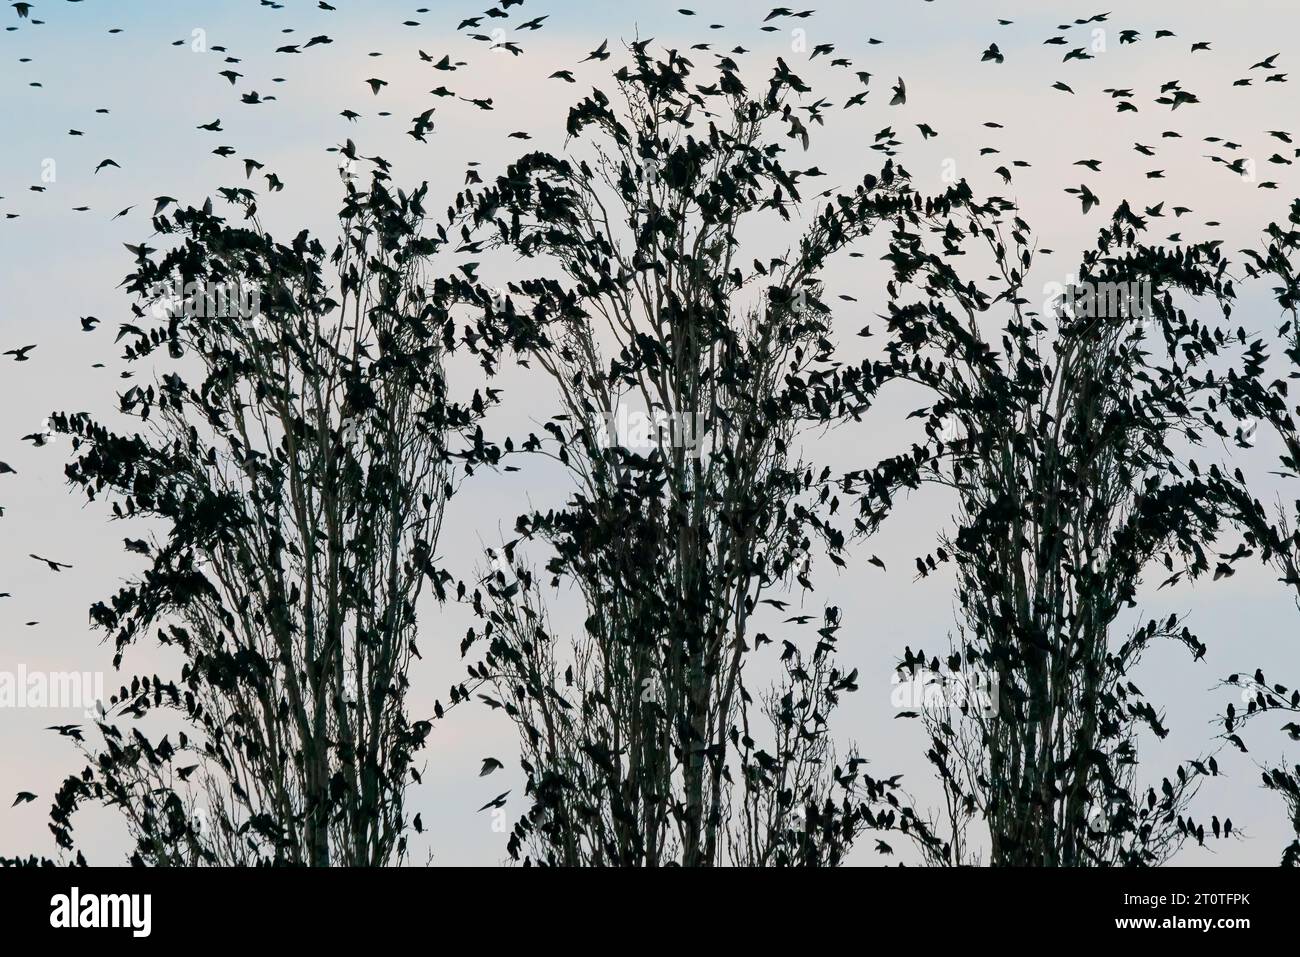 Viele Starlinge (Sturnus vulgaris) in einem Baum. Vogelherde fliegen in den Niederlanden. Starling-Murrationen. Stockfoto